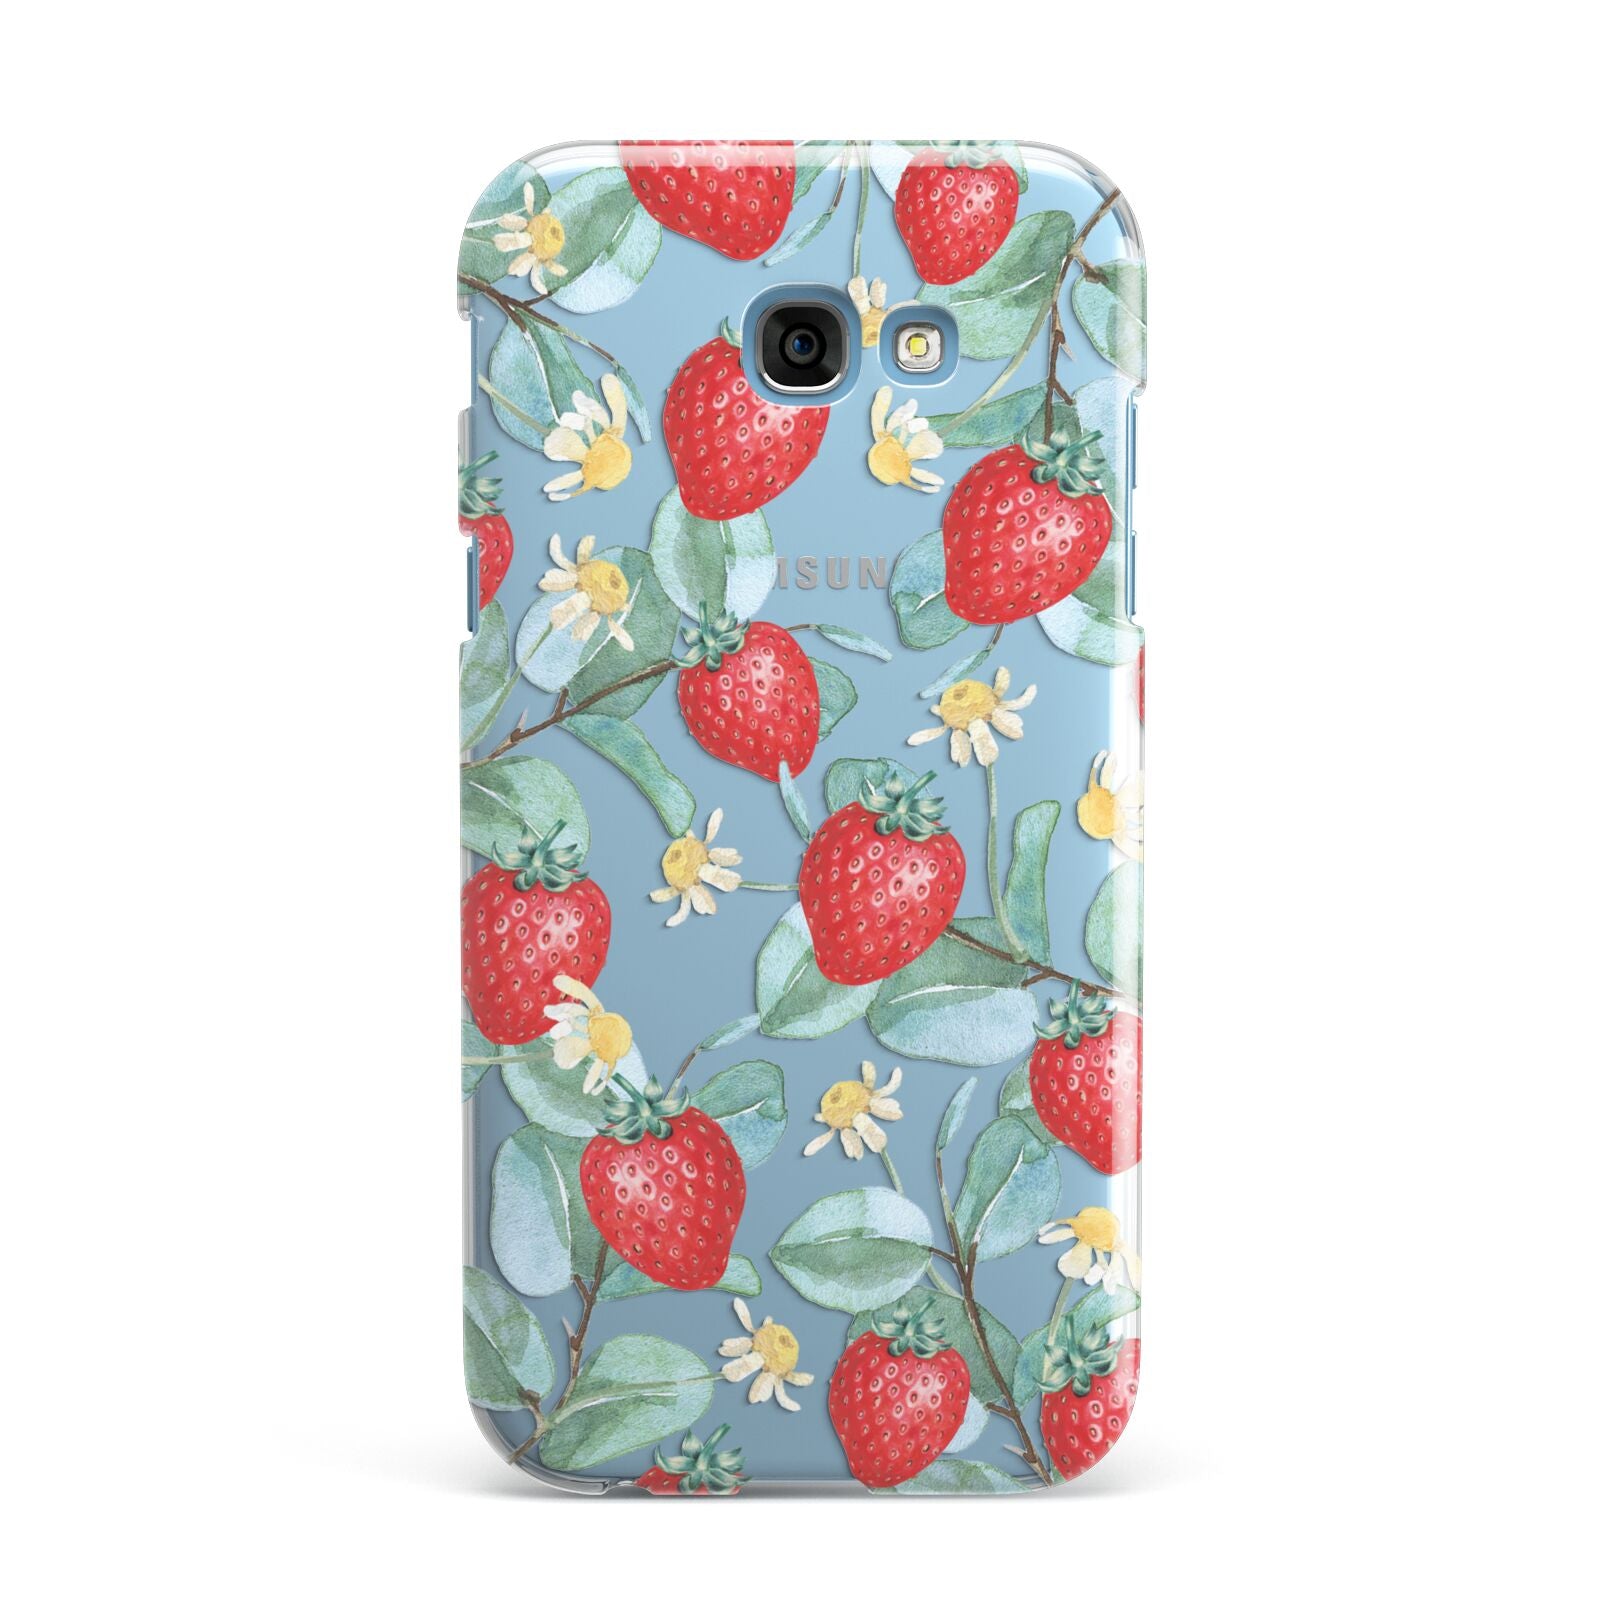 Strawberry Plant Samsung Galaxy A7 2017 Case